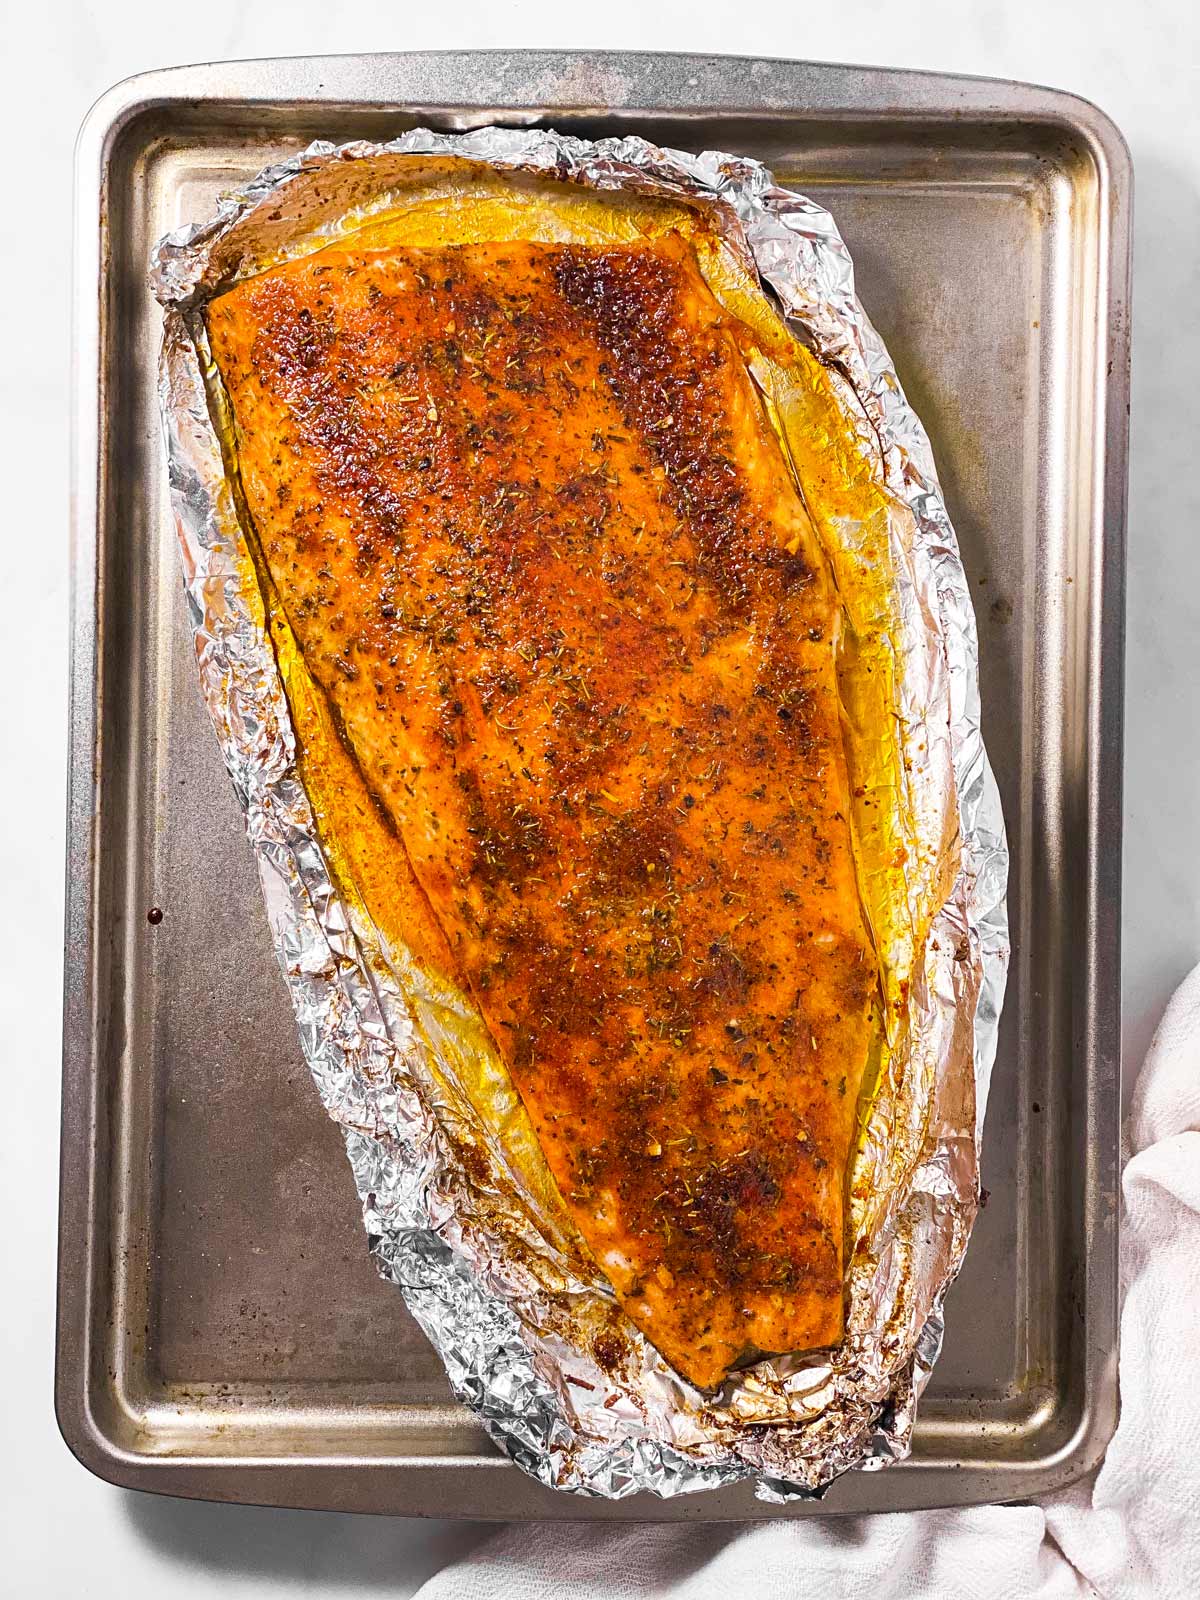 baked salmon fillet on foil lined baking sheet